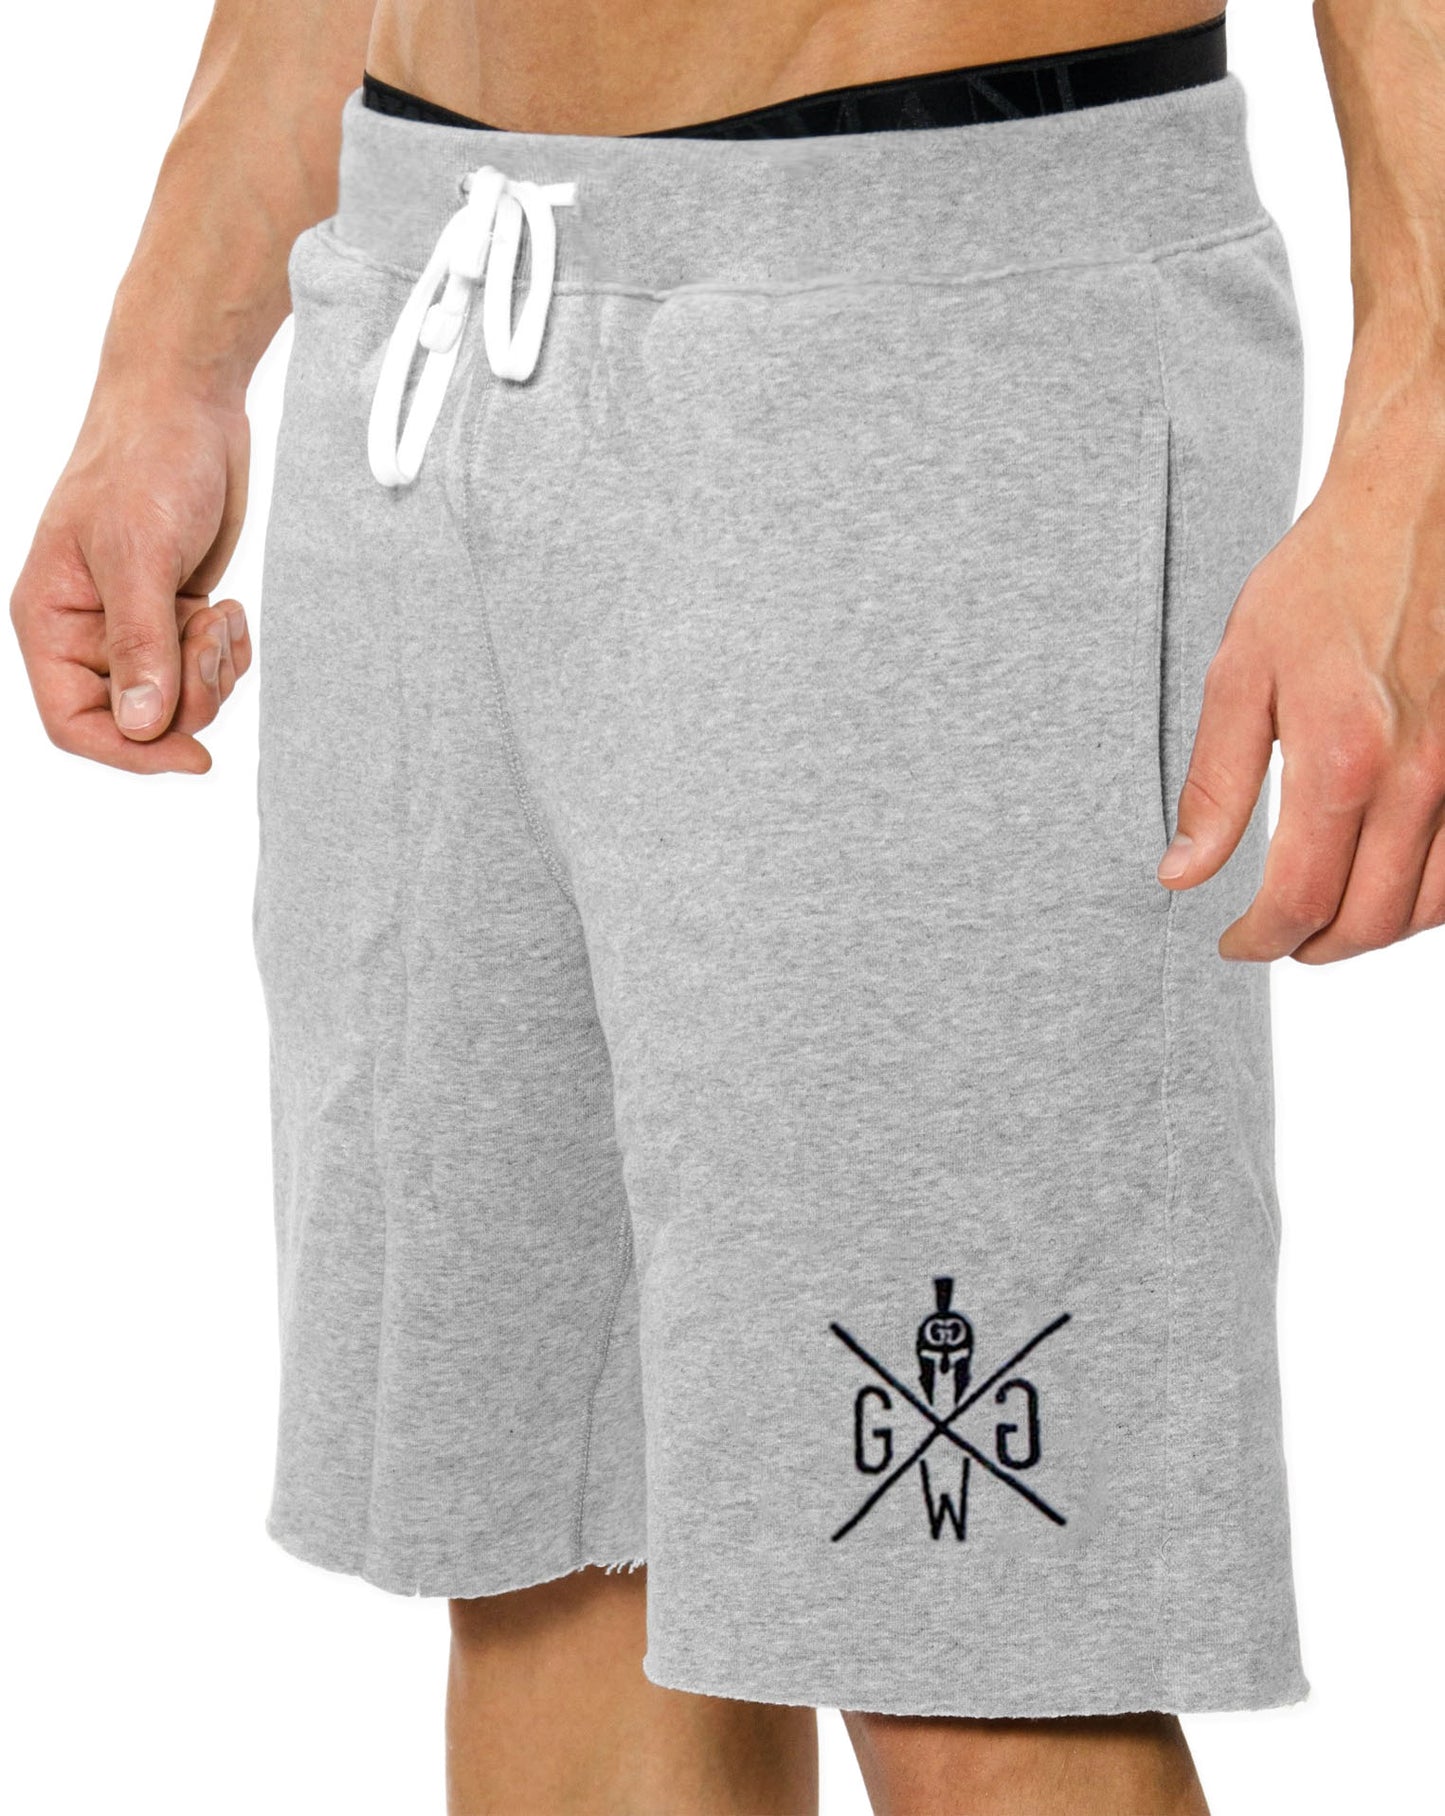 Herren Sporthosen in Grau von Gym Generation, perfekt für Sportler und modebewusste Männer, robust und komfortabel.